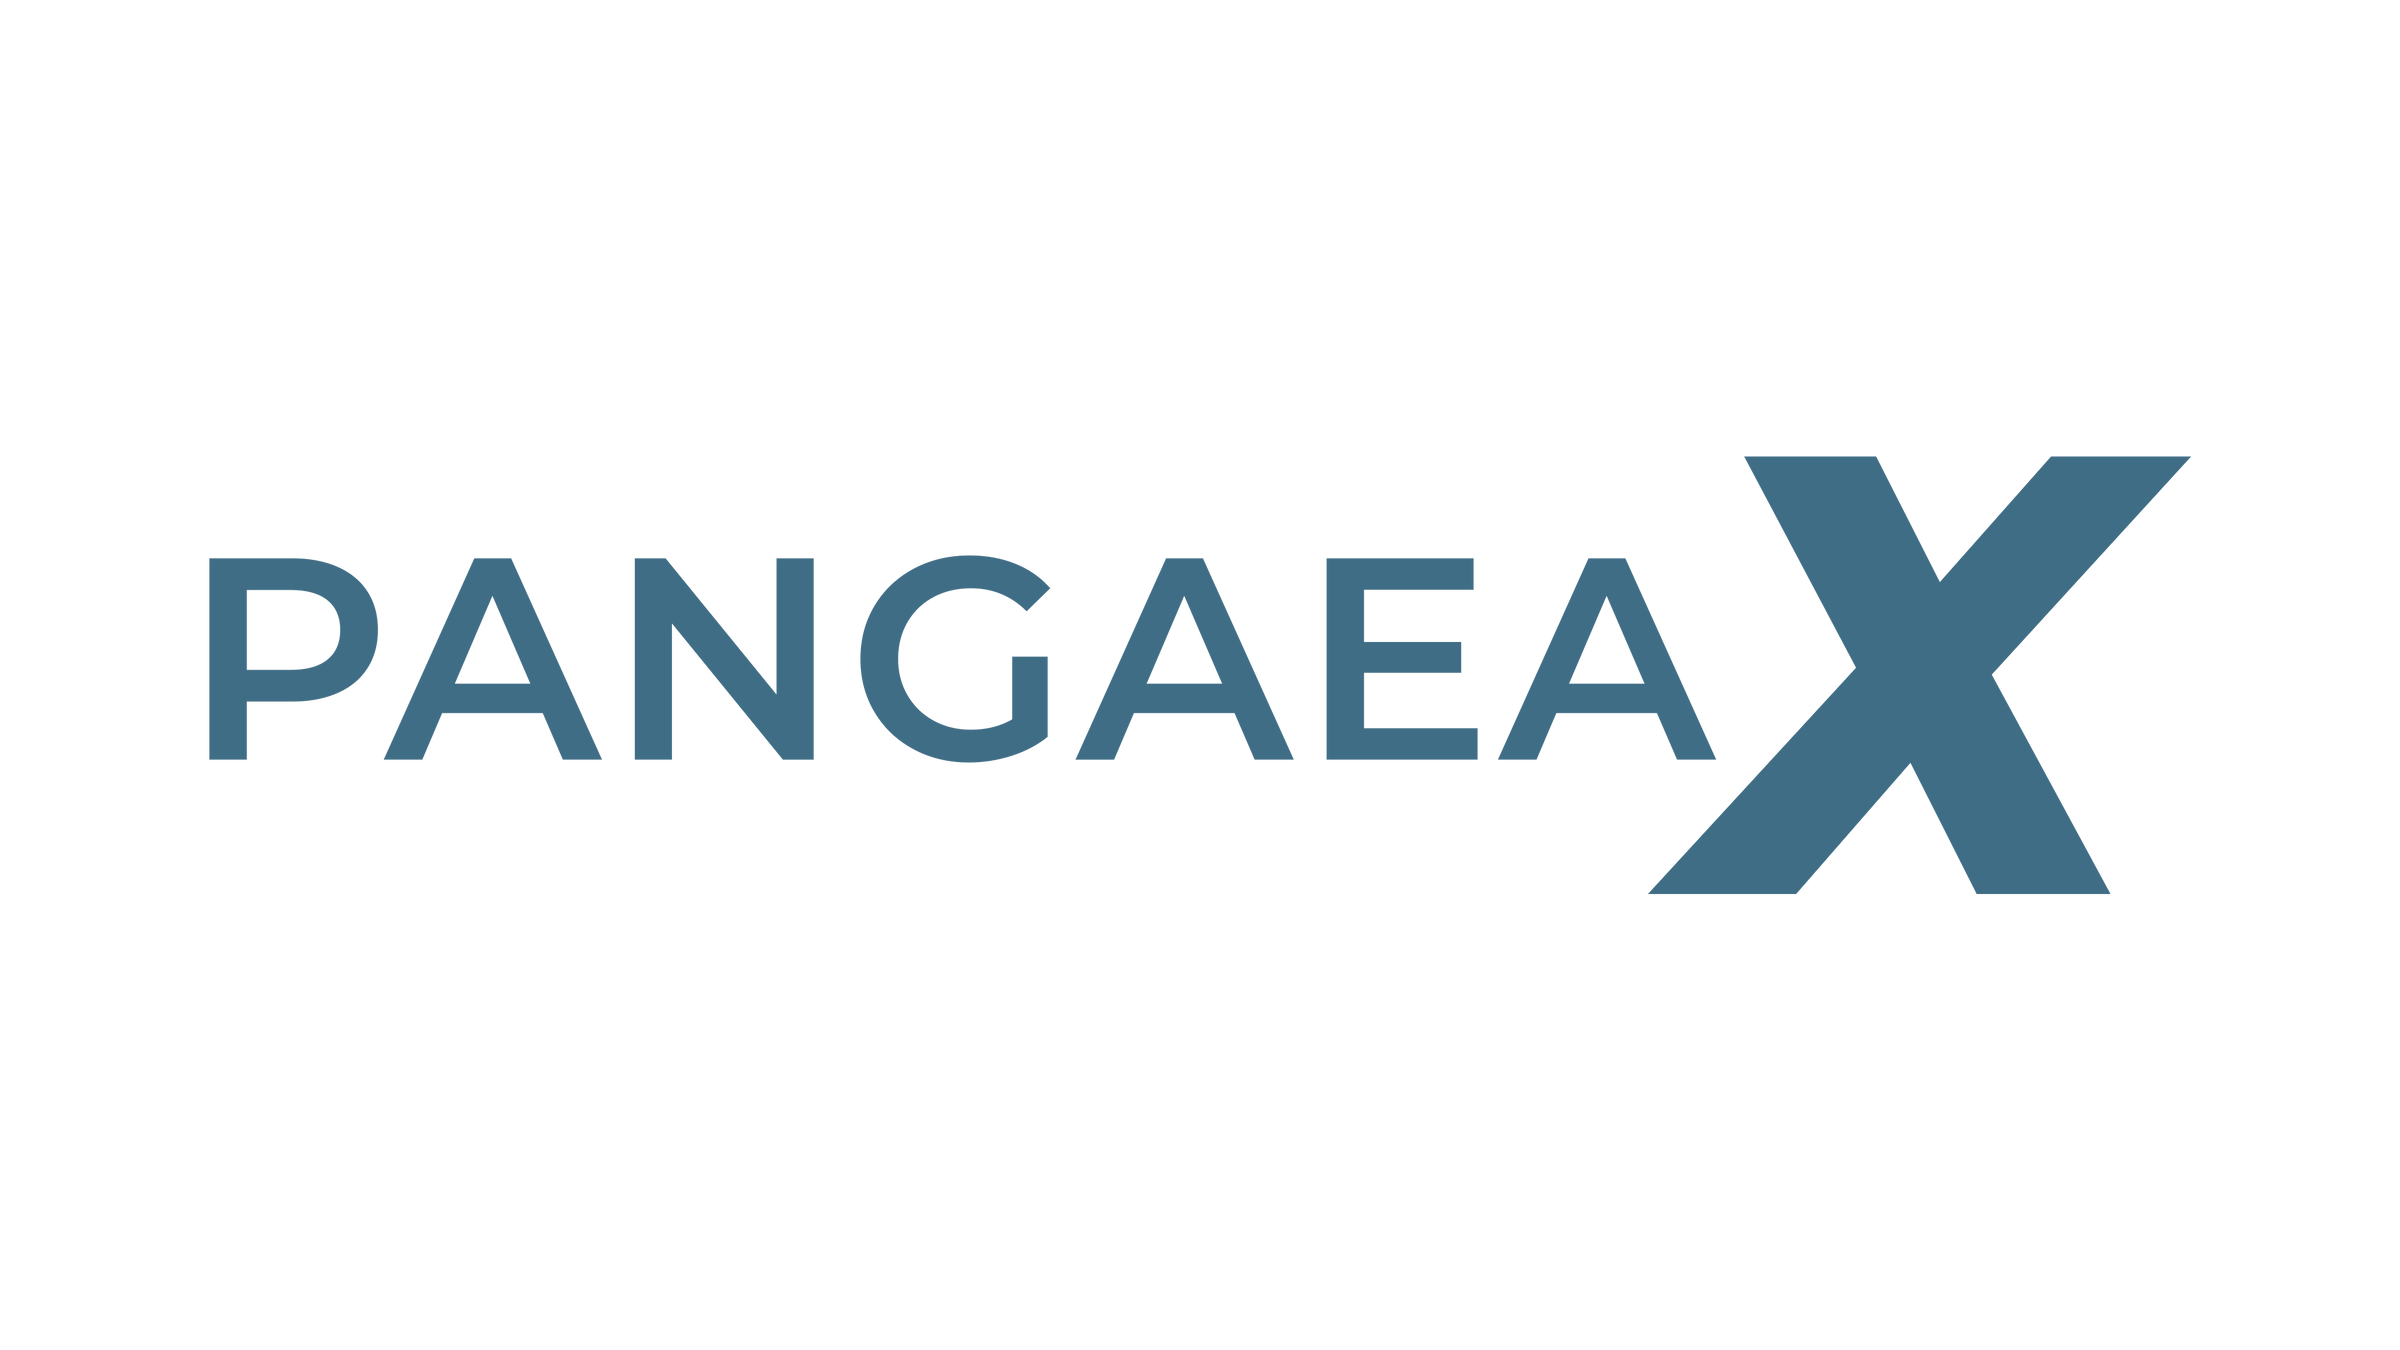 pangaea.x